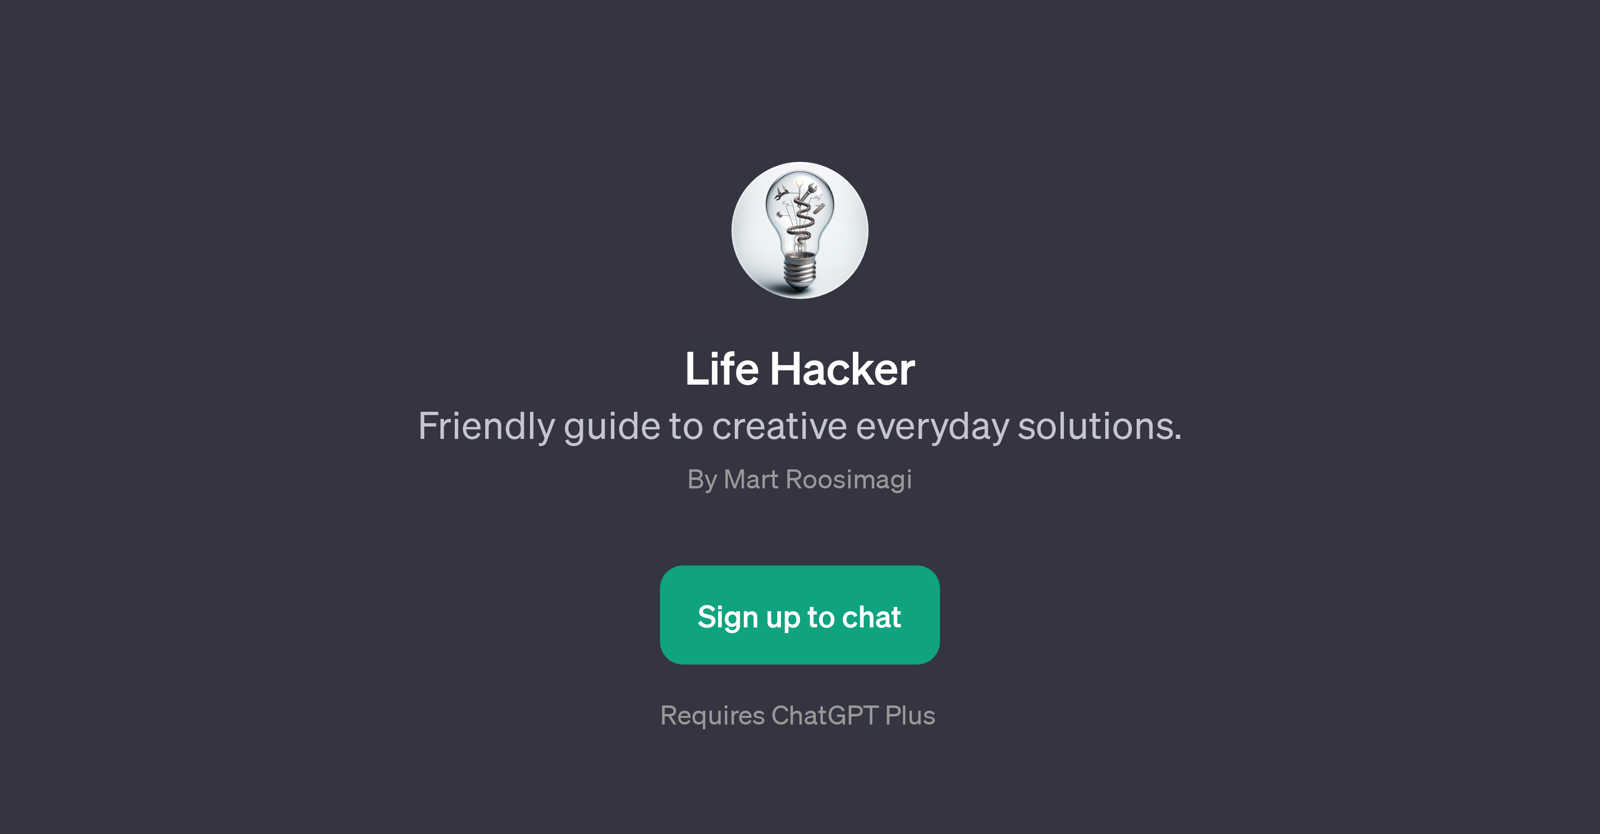 Life Hacker website